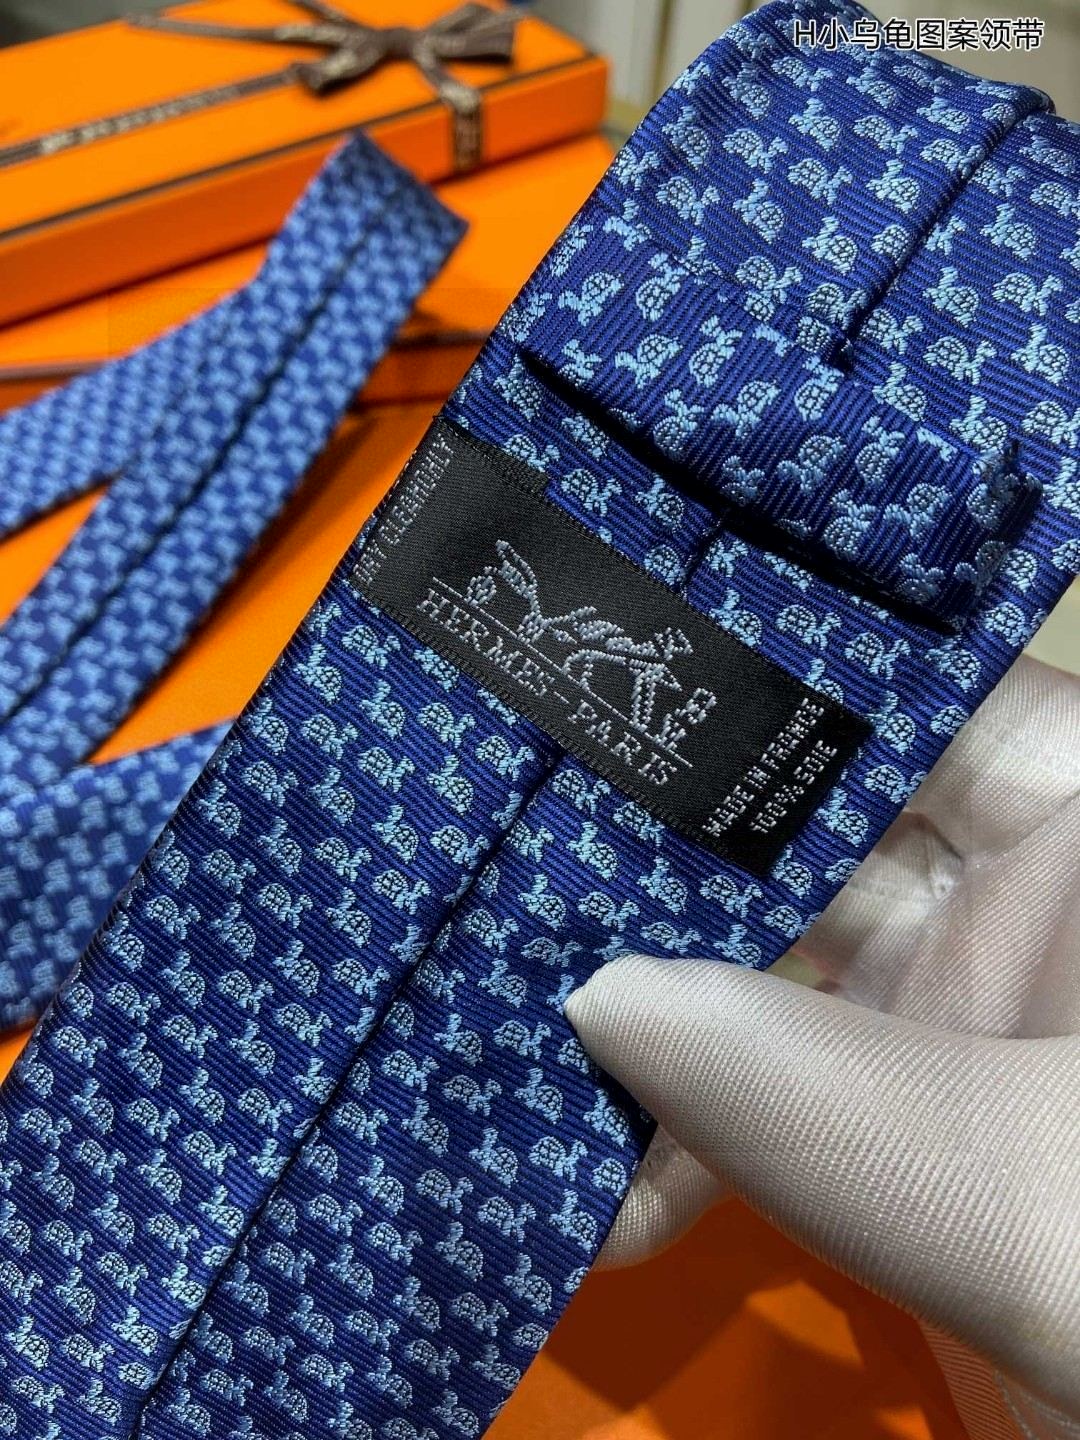 男士新款领带系列H小乌龟图案领带稀有H家每年都有一千条不同印花的领带面世从最初的多以几何图案表现骑术活动